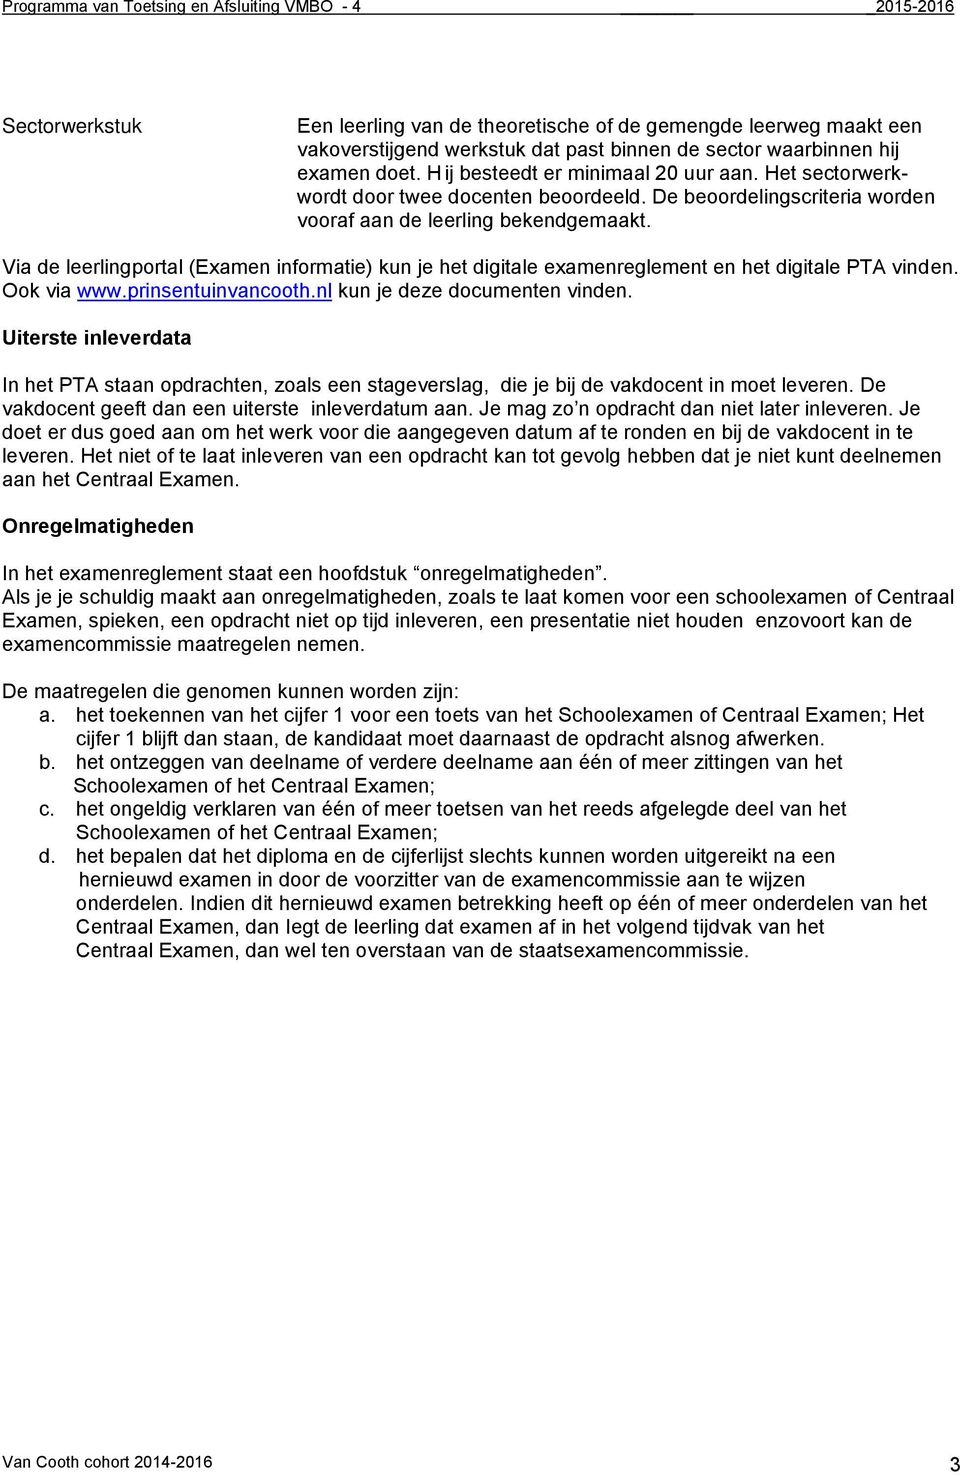 Via de leerlingportal (Examen informatie) kun je het digitale examenreglement en het digitale PTA vinden. Ook via www.prinsentuinvancooth.nl kun je deze documenten vinden.